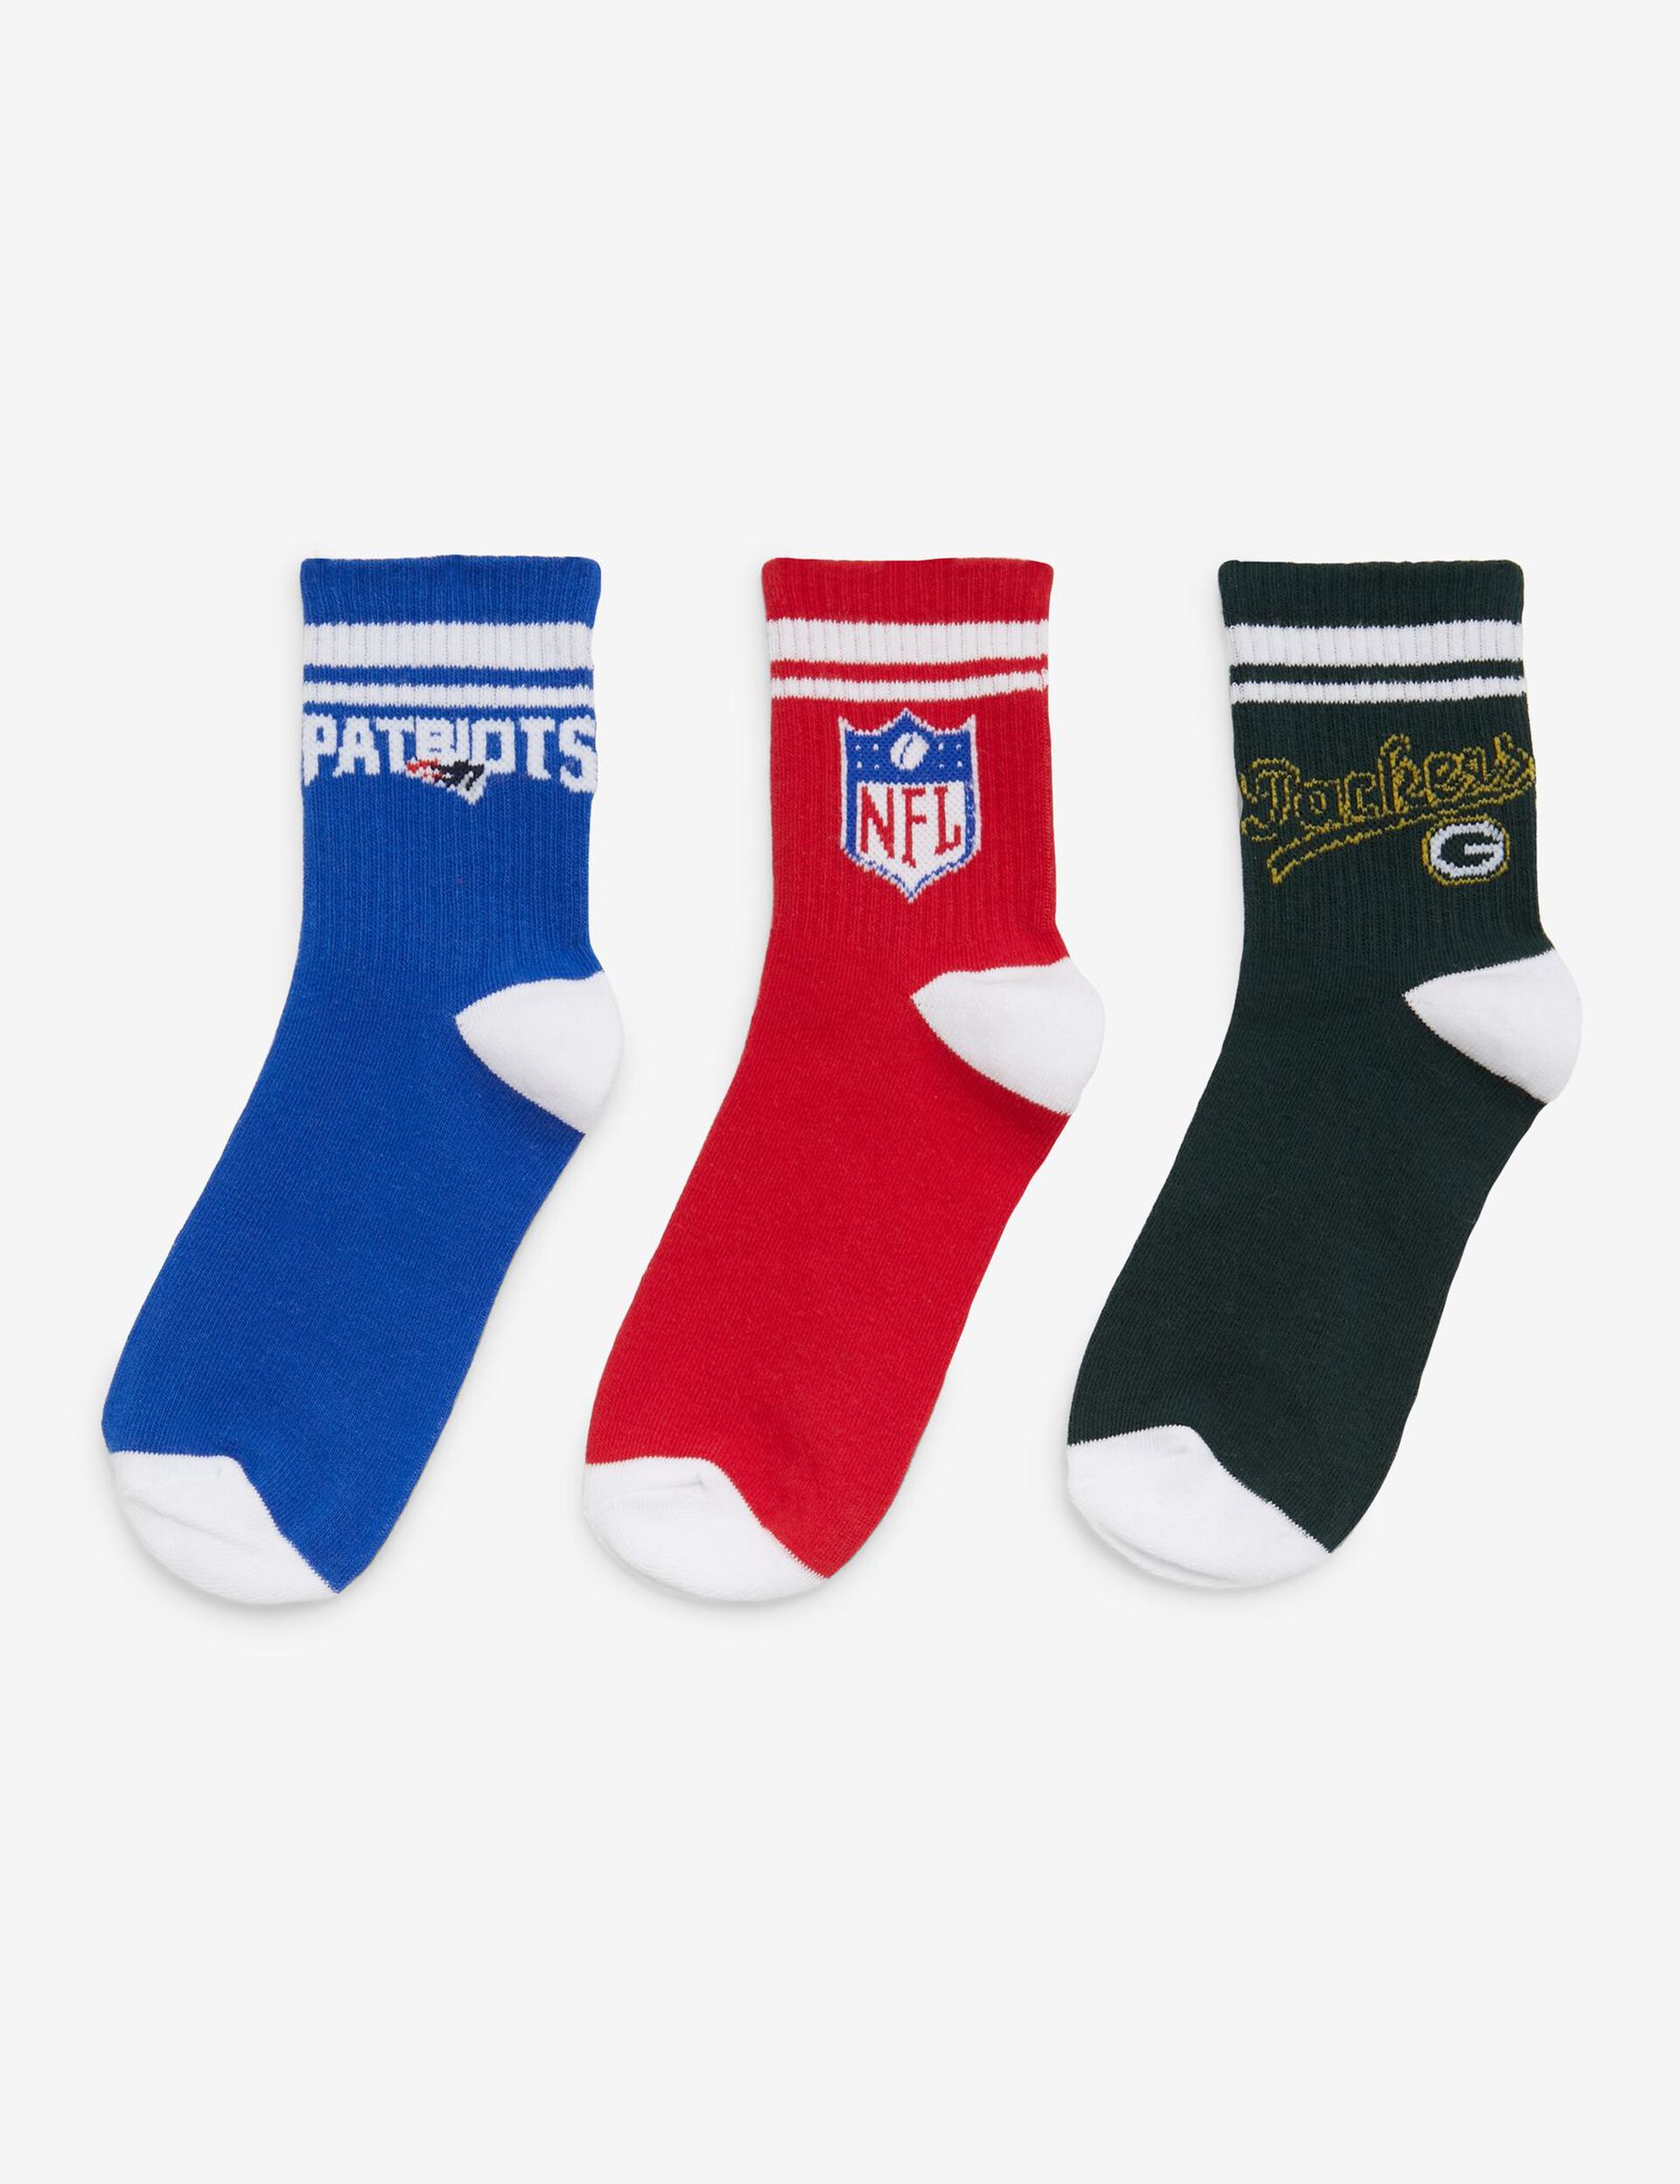 Chaussettes NFL vertes, rouges et bleues